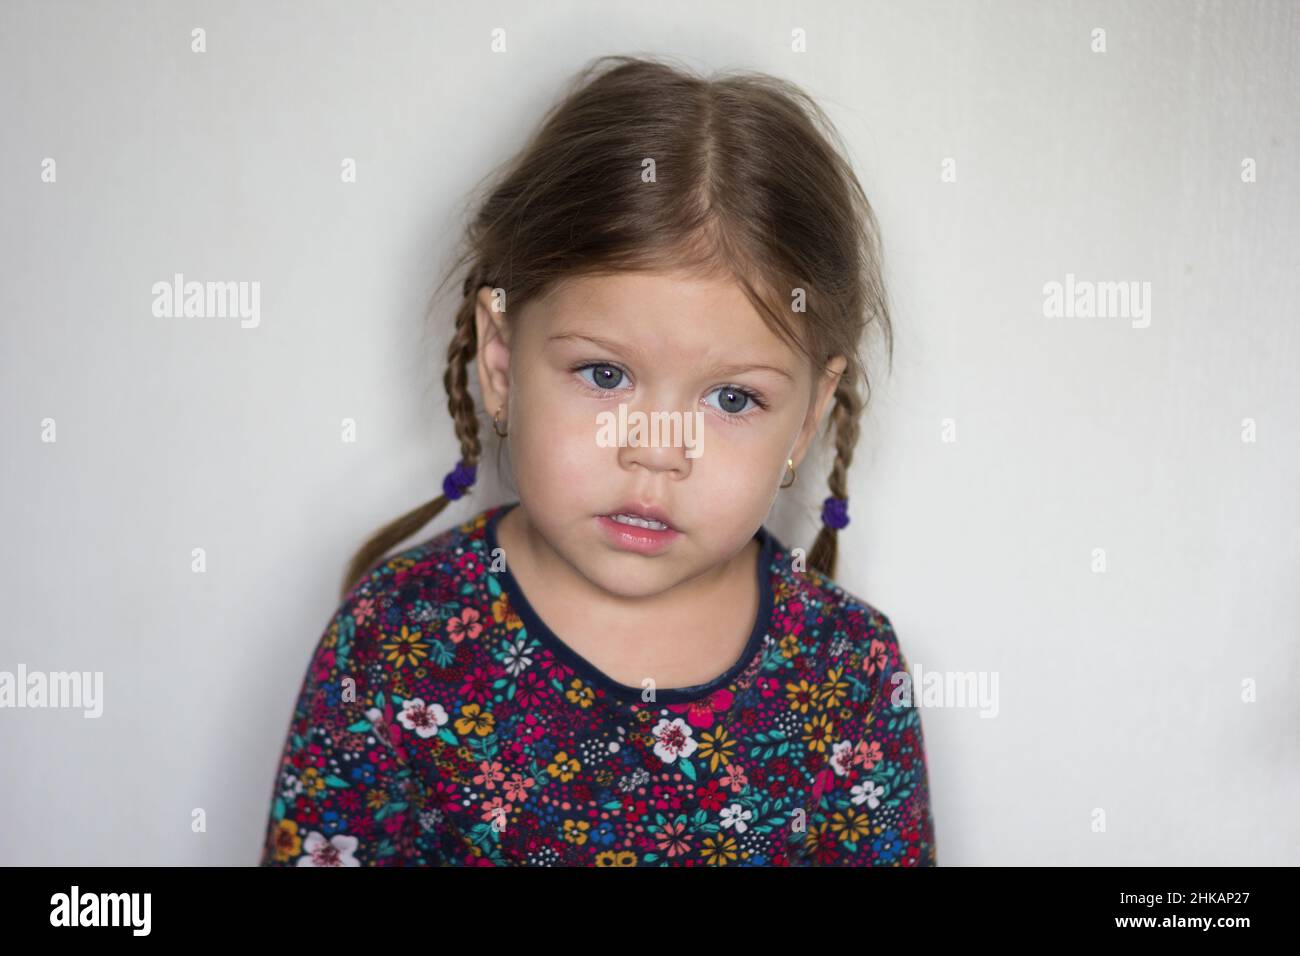 Porträt des Kaukasiers eines dreijährigen kleinen Mädchens in einem Verlust, das auf dem weißen Hintergrund zur Seite schaut Stockfoto